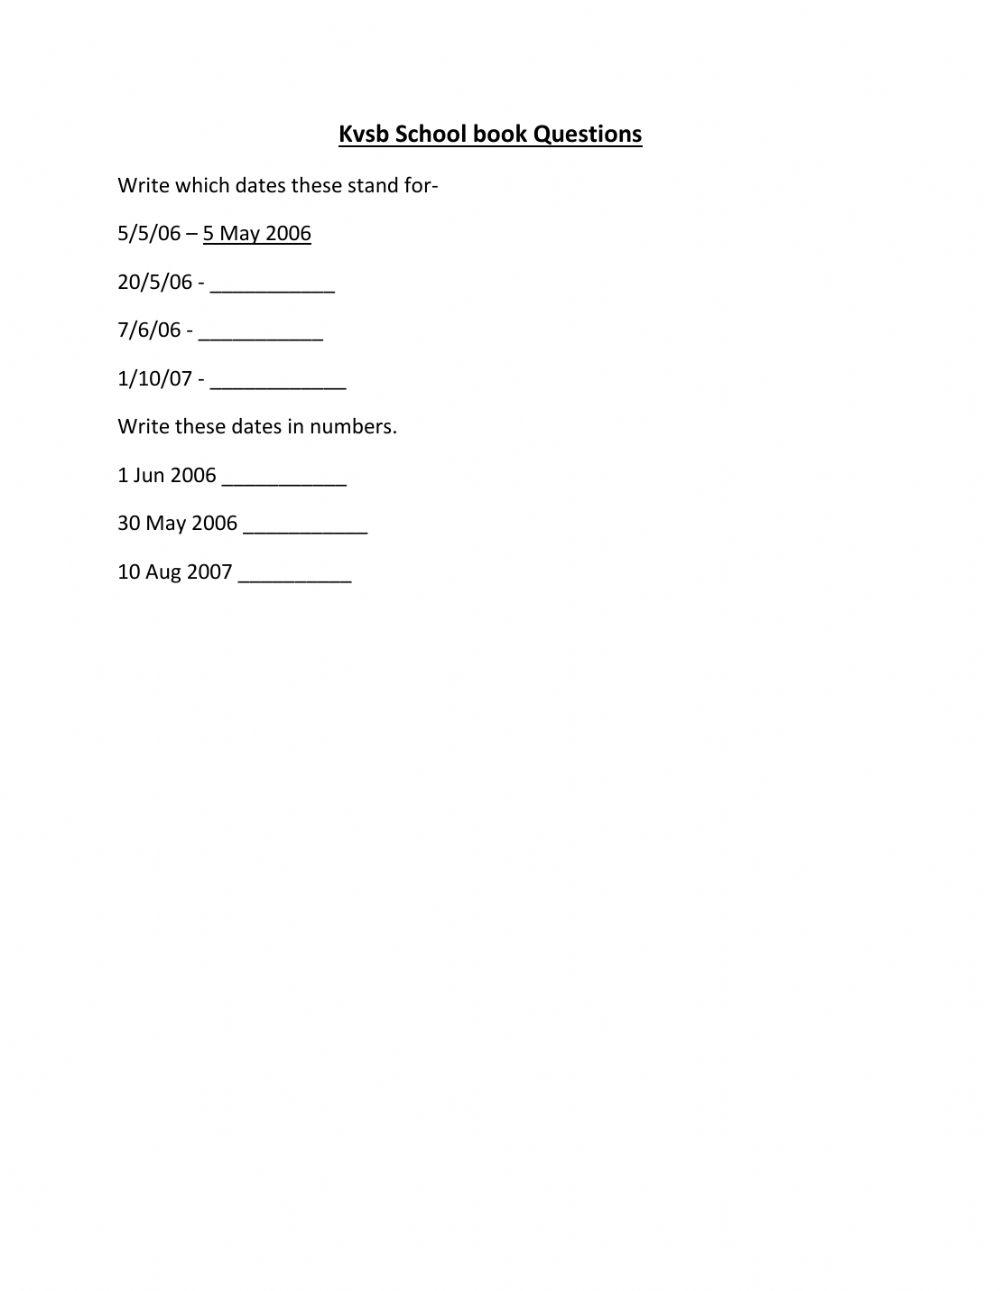 Maths KVSB worksheet by KVSB student 10 year boy